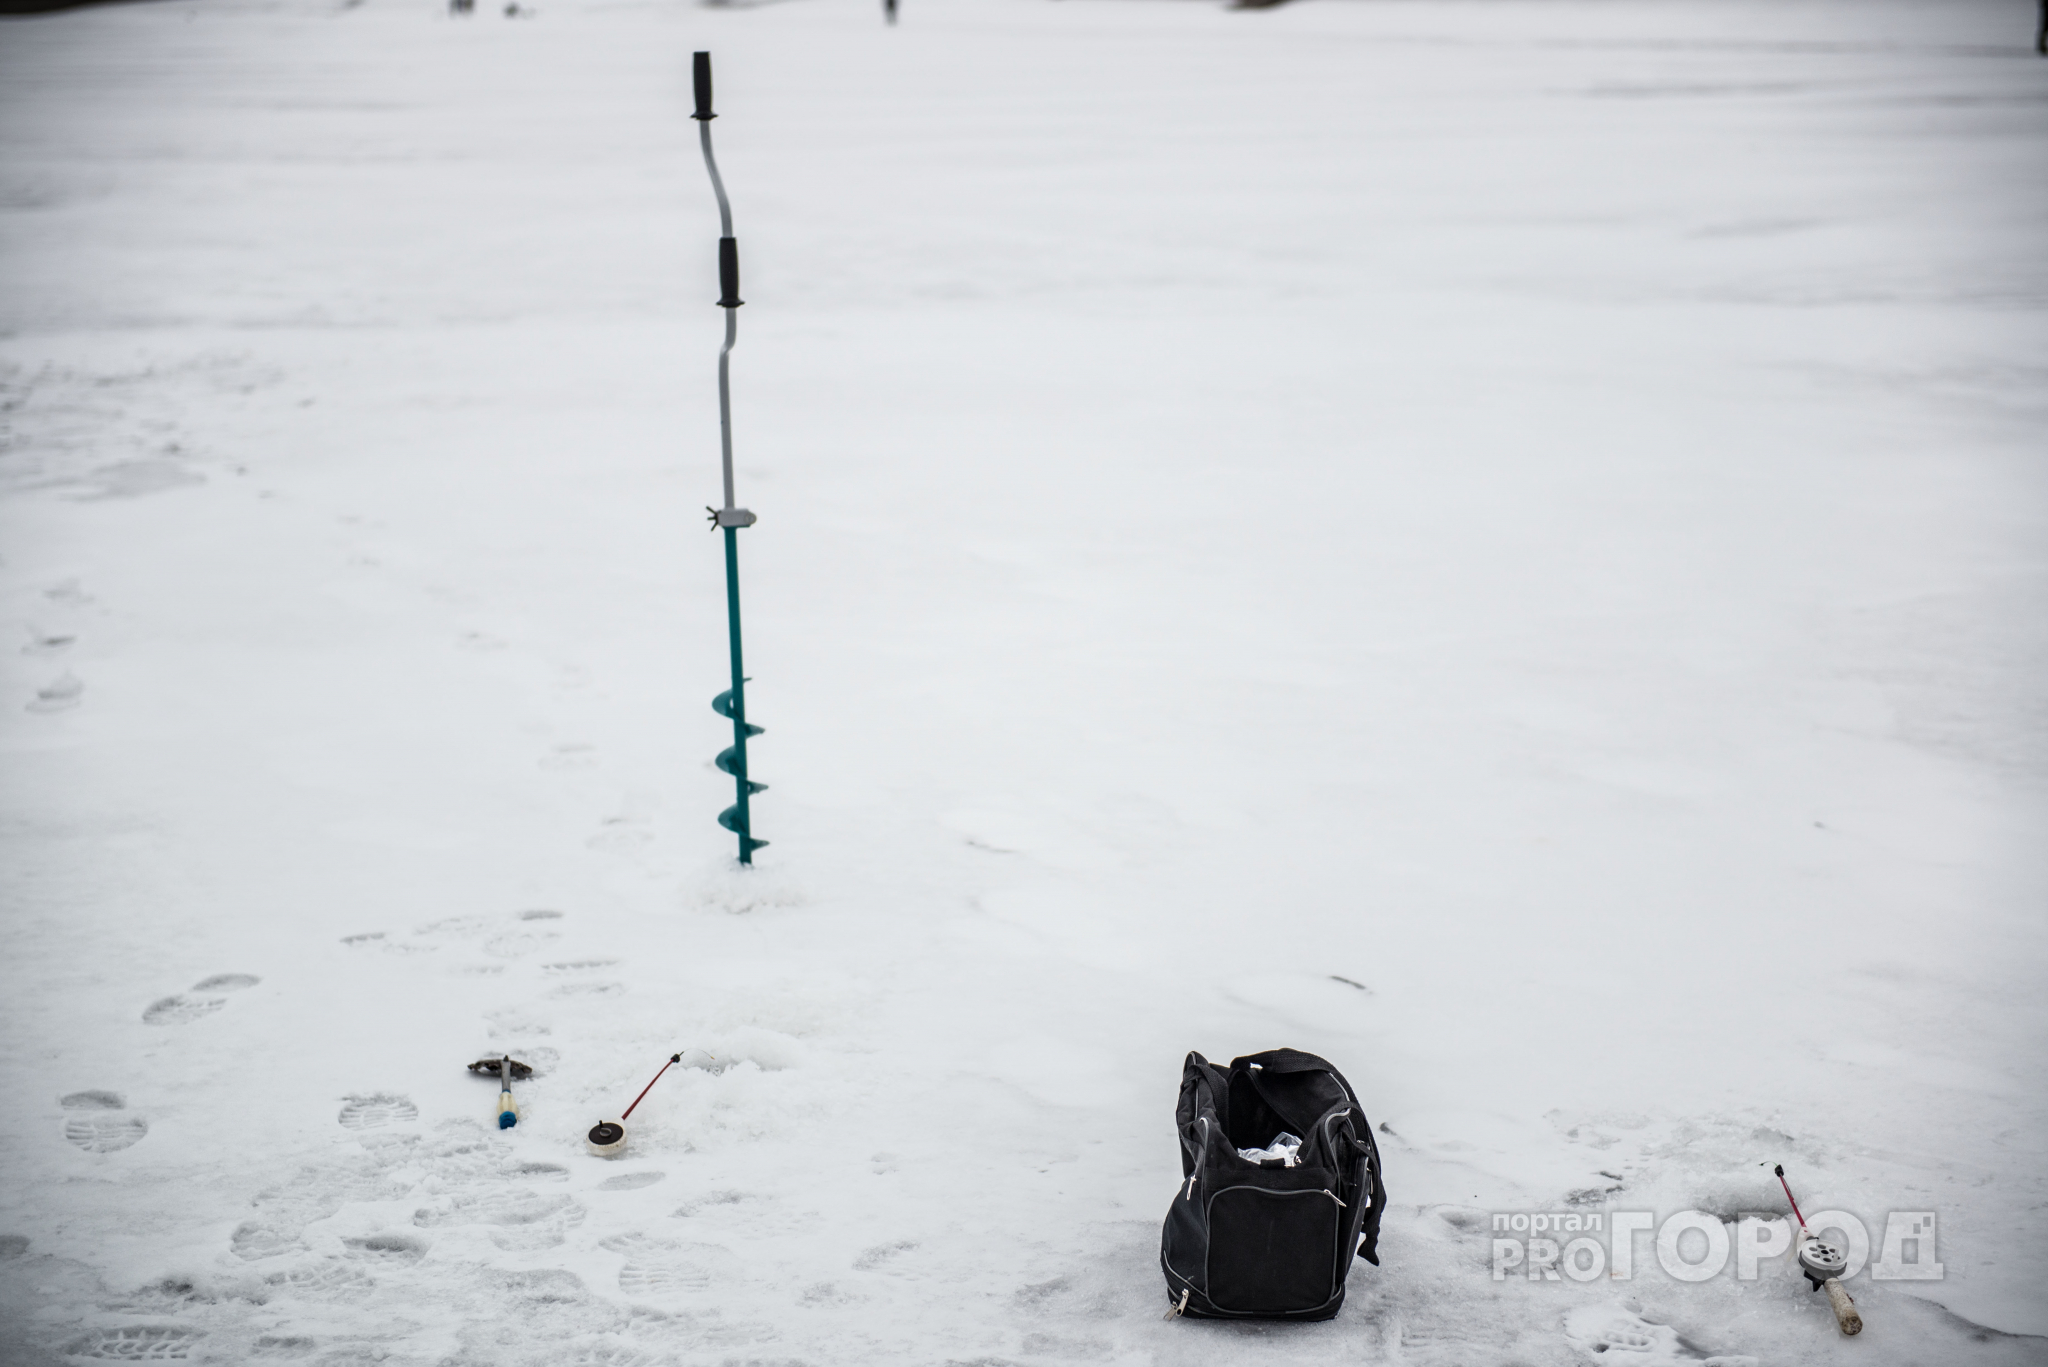 Трагедия в Марий Эл: рыбак провалился под лед на Малой Кокшаге